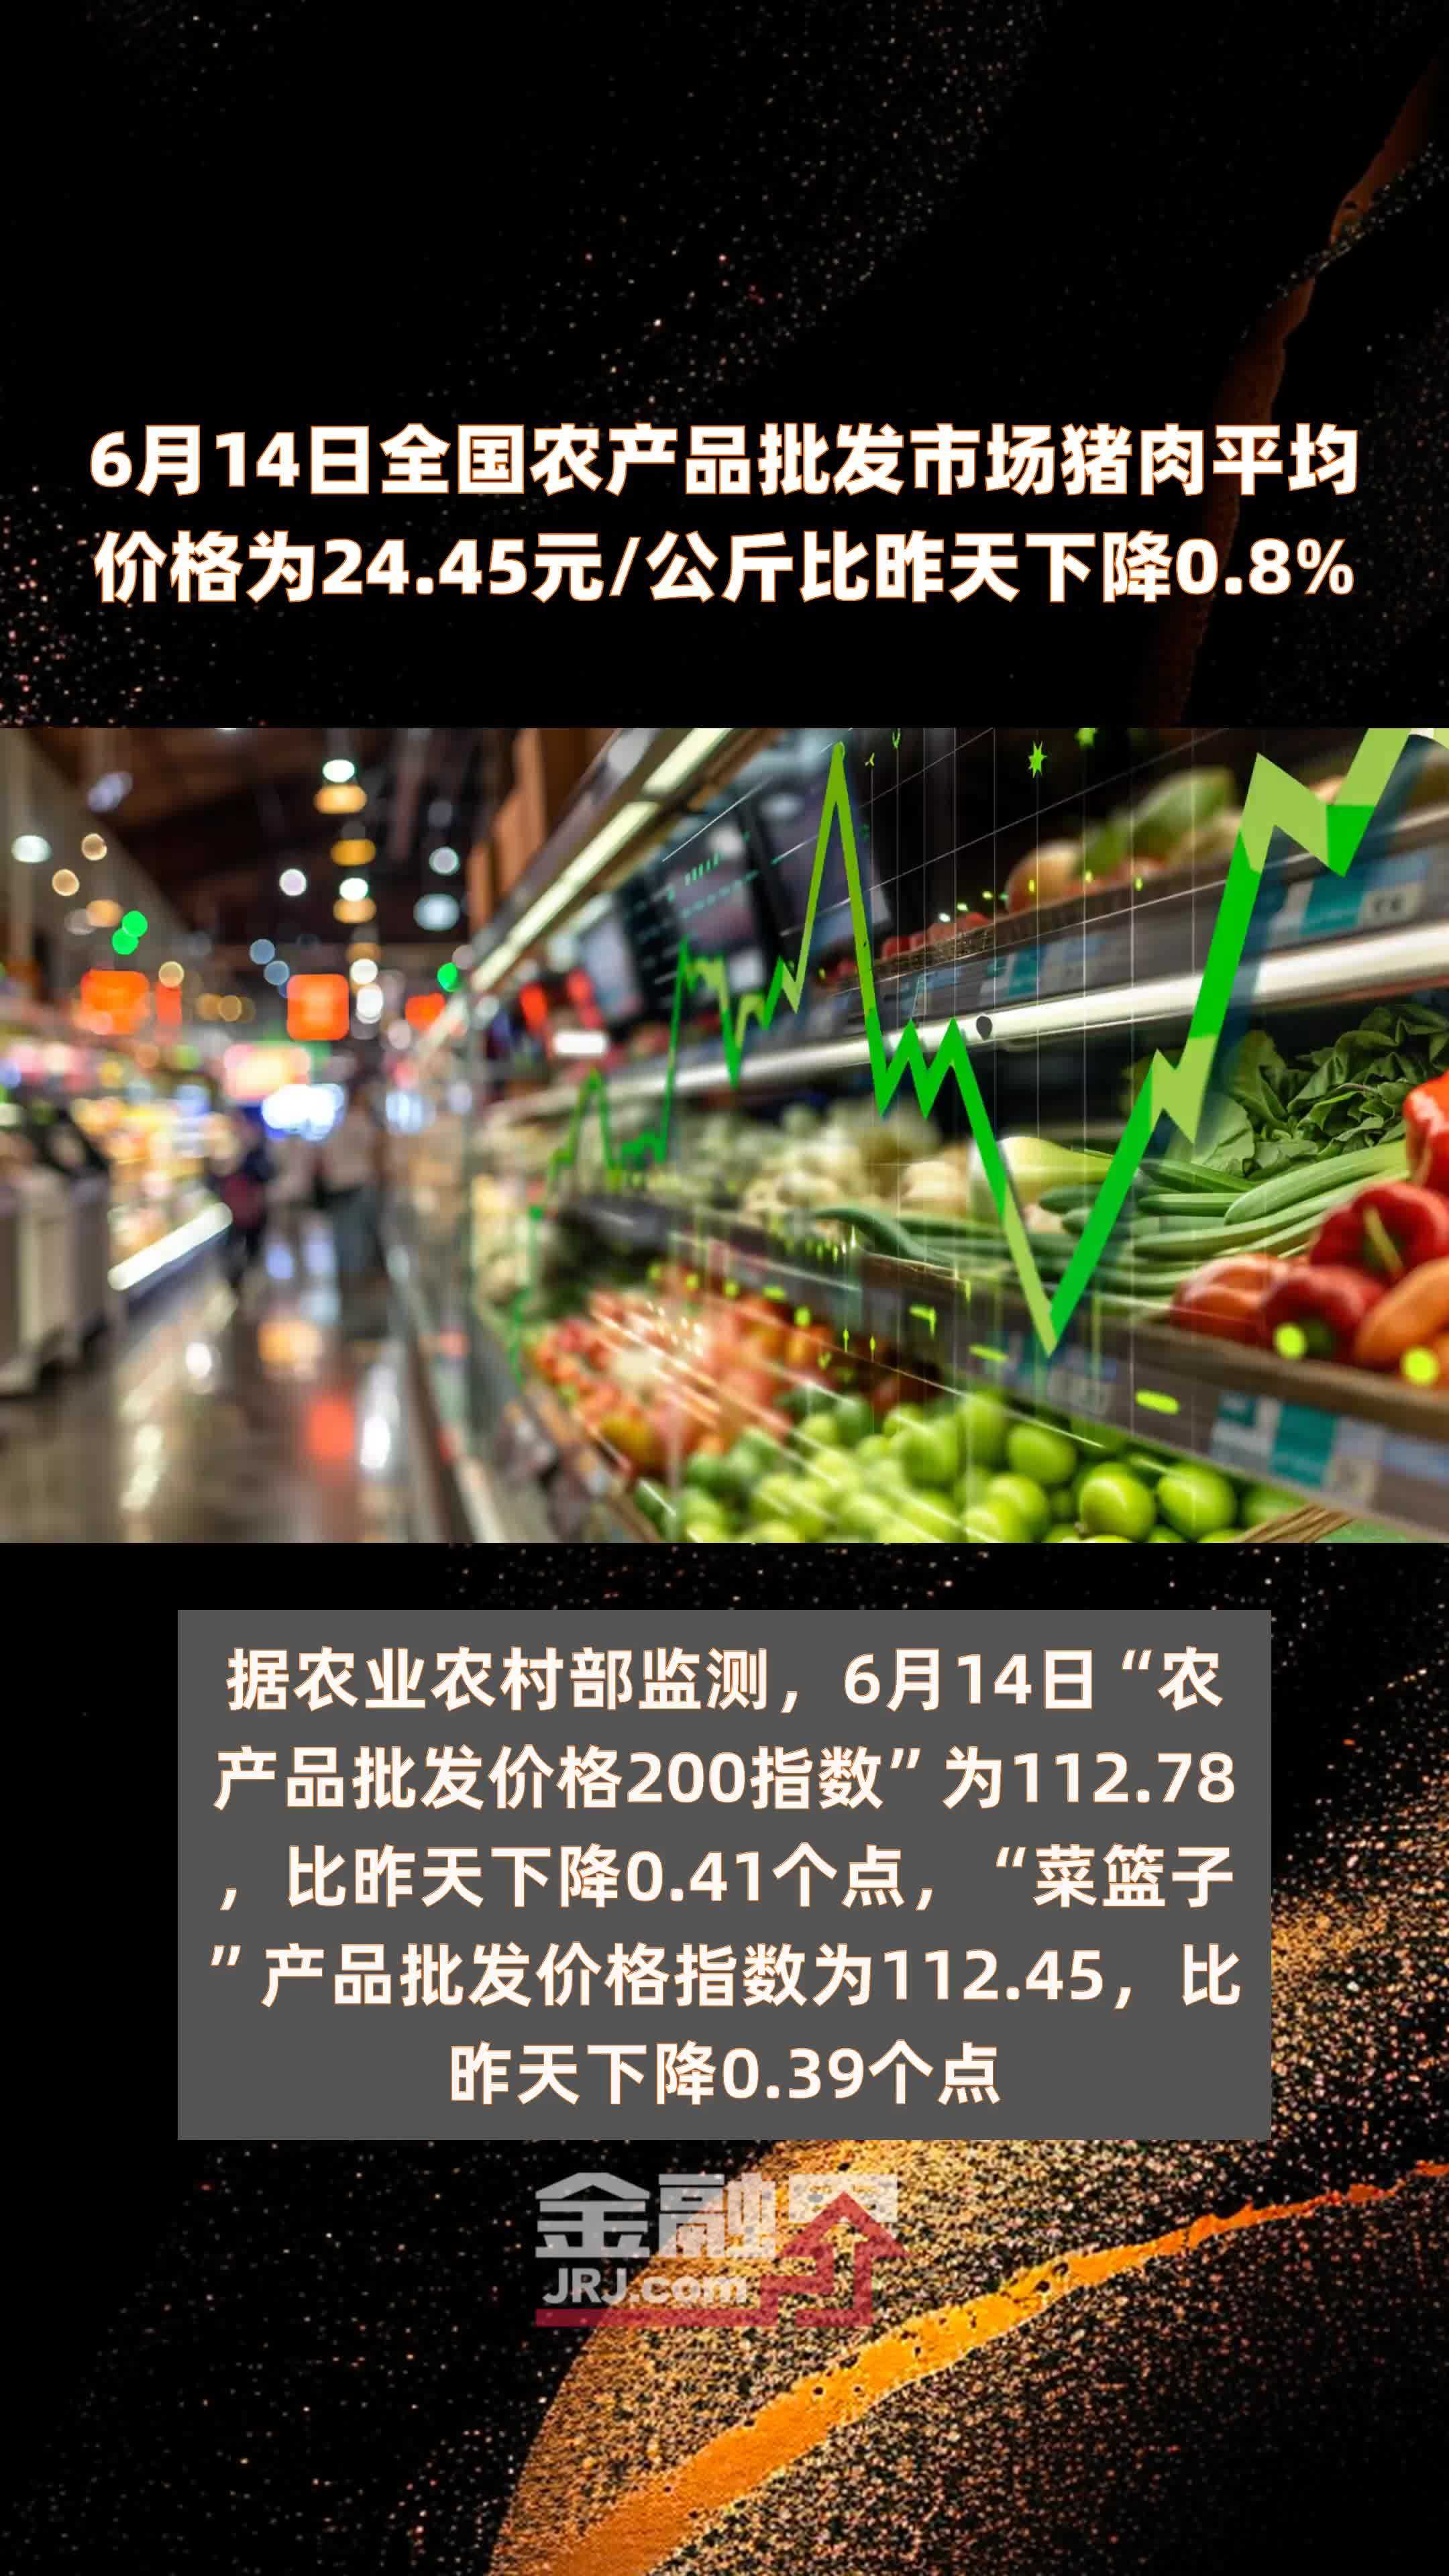 6月14日全国农产品批发市场猪肉平均价格为2445元公斤比昨天下降08